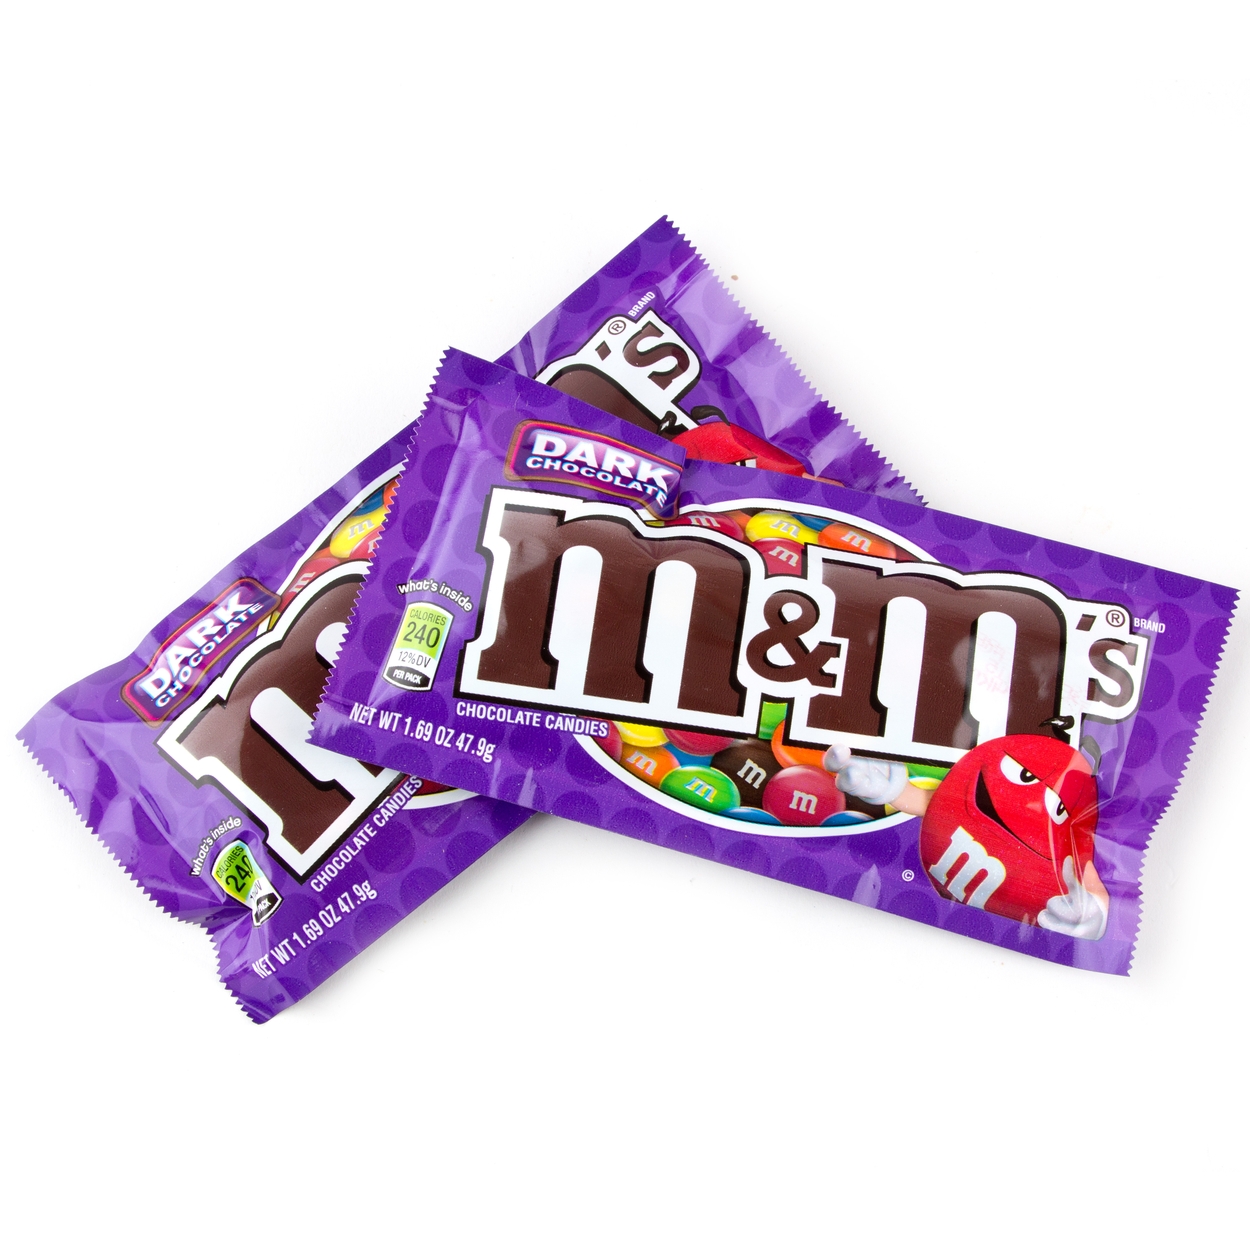 M&M Dark Chocolate - 24CT • Chocolate Mini Pack's • Bulk Chocolate